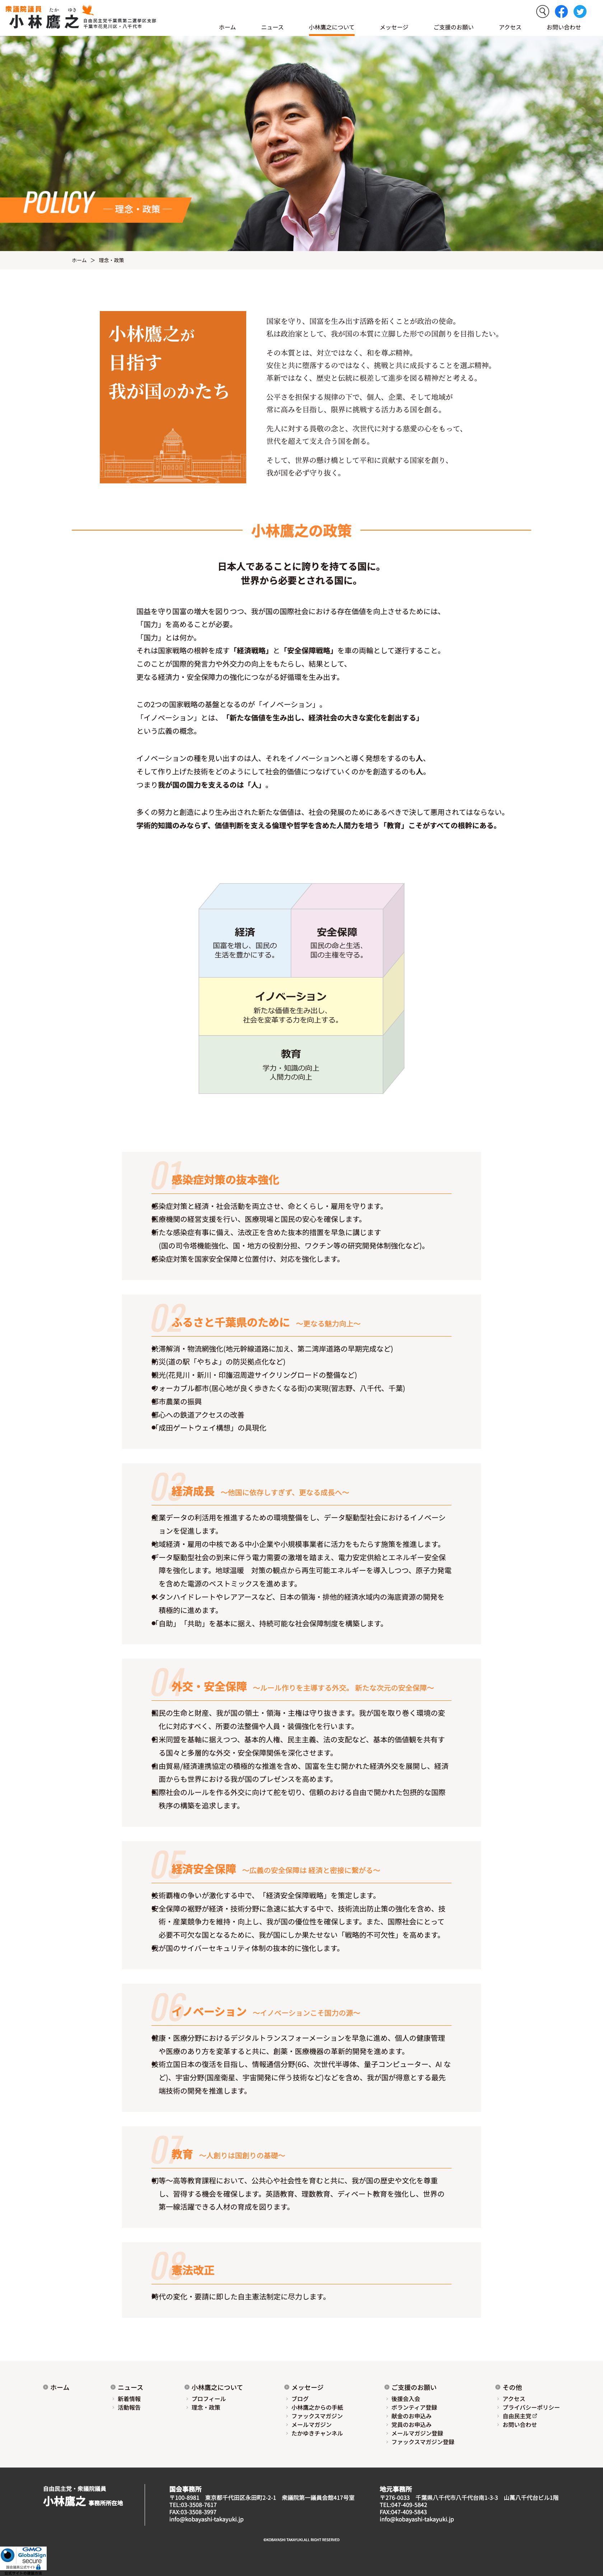 自由民主党千葉県第二選挙区支部長  小林鷹之オフィシャルサイト 様 デザインイメージ2